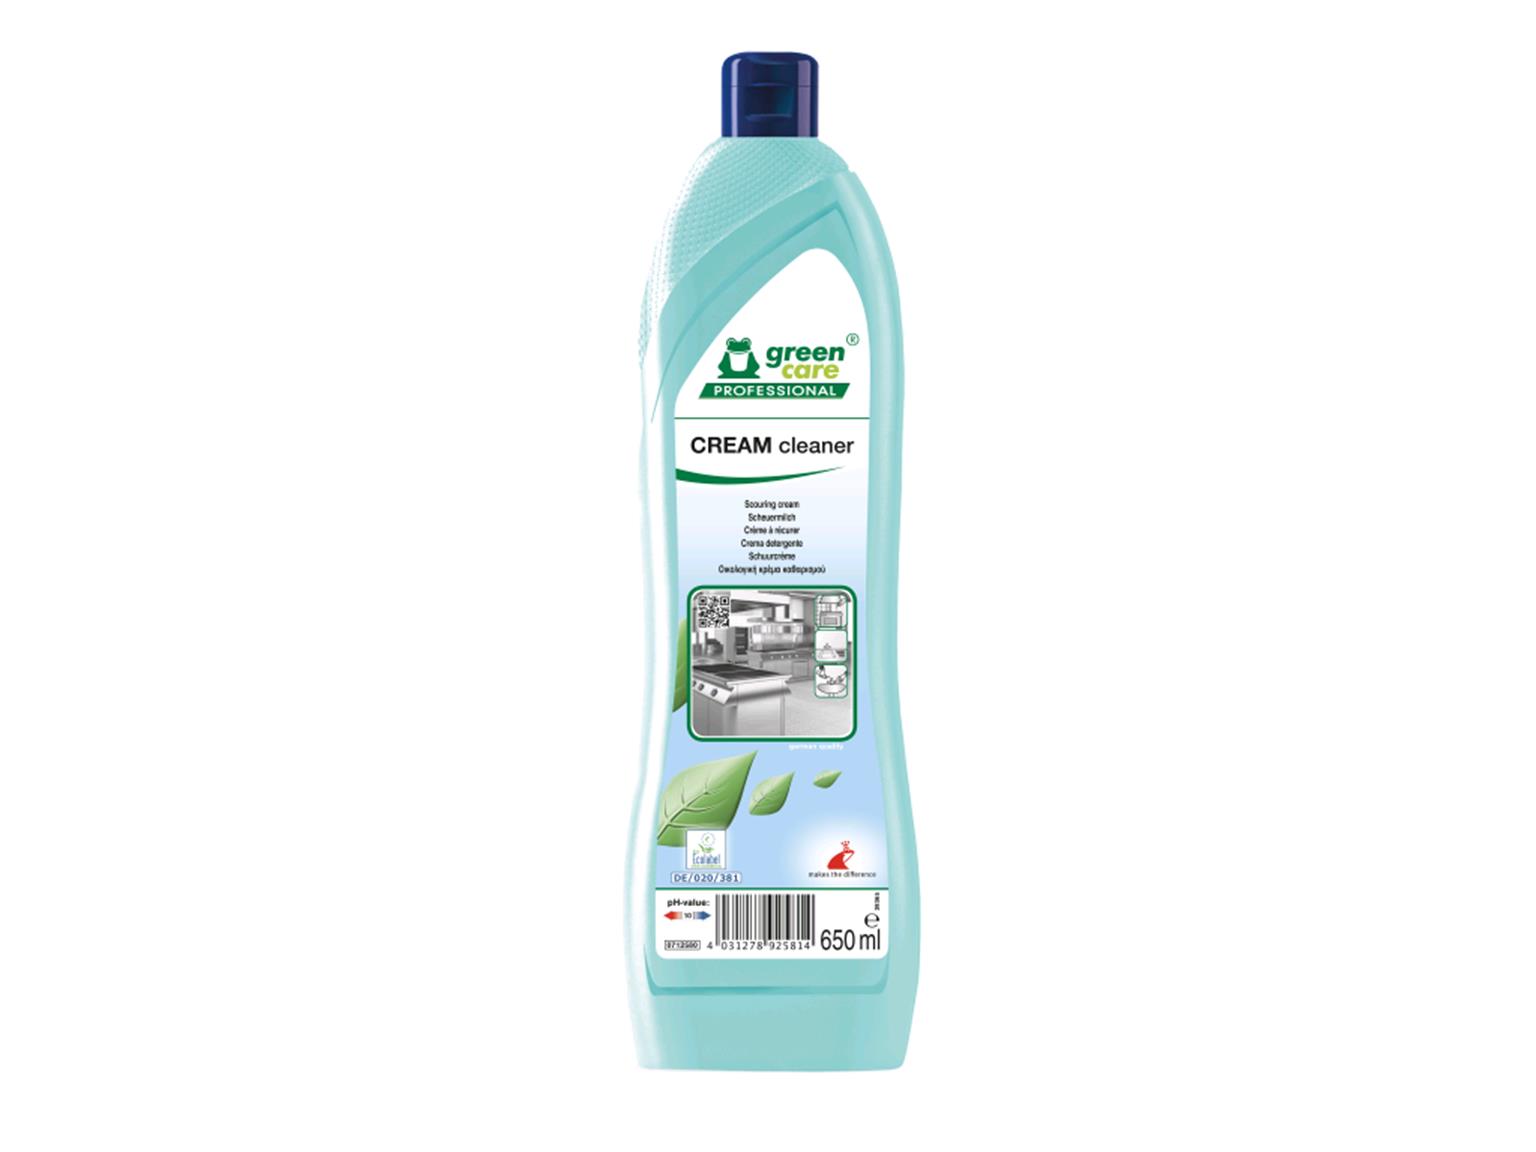 REINIGUNGSMITTEL TANA  CREAM cleaner, 0.65 L Flasche